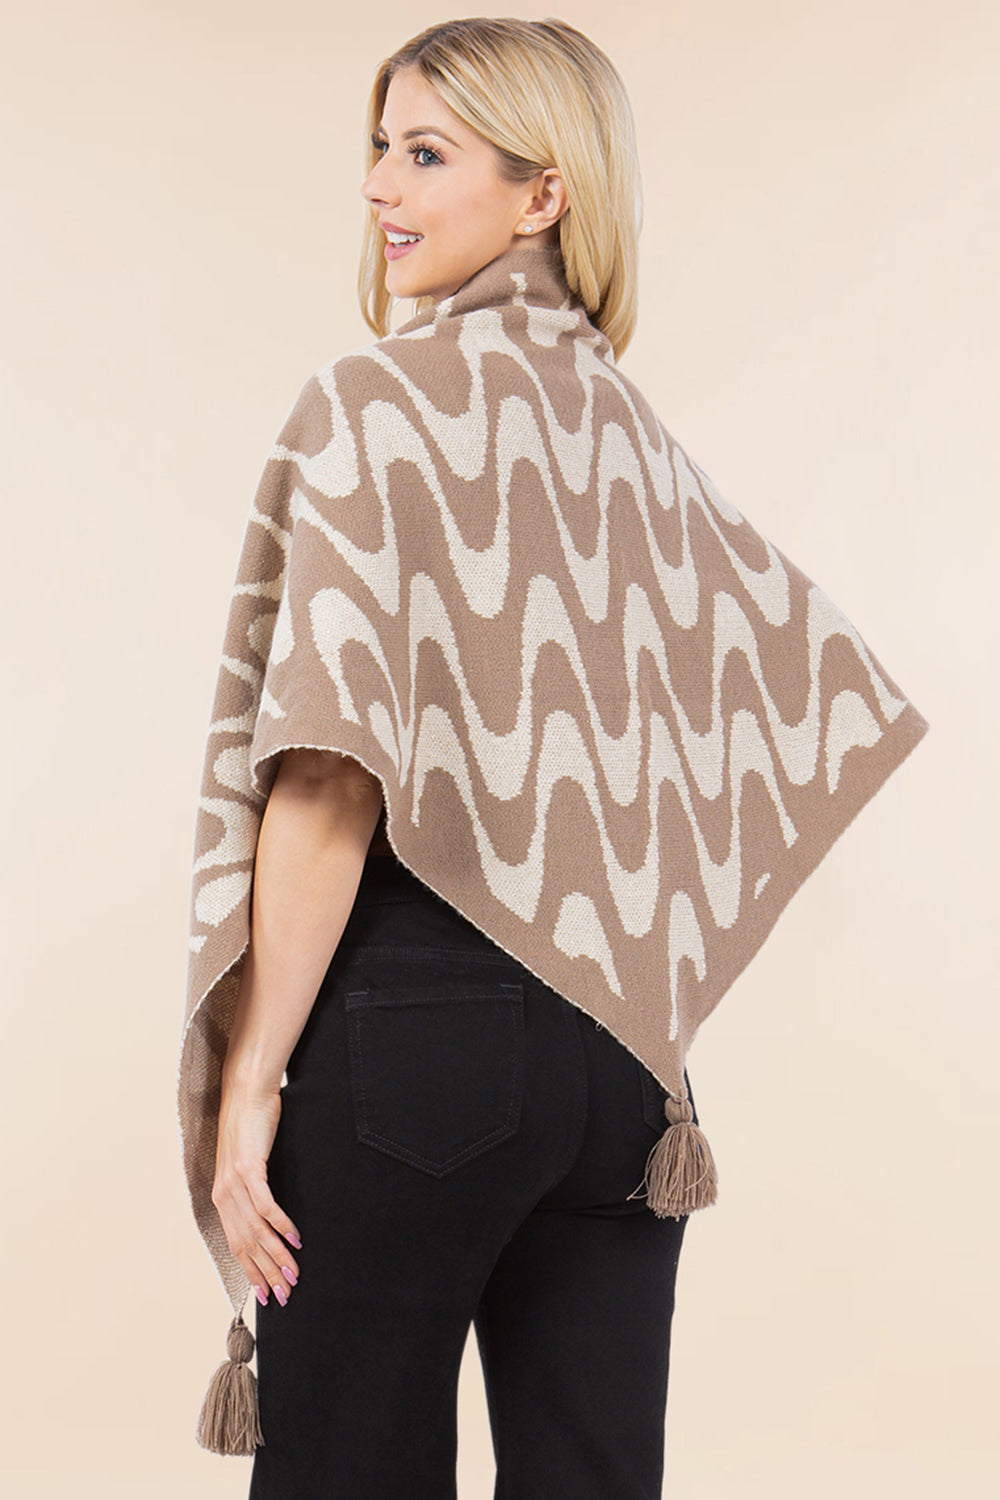 OA-4270 geometric design traingle shawl